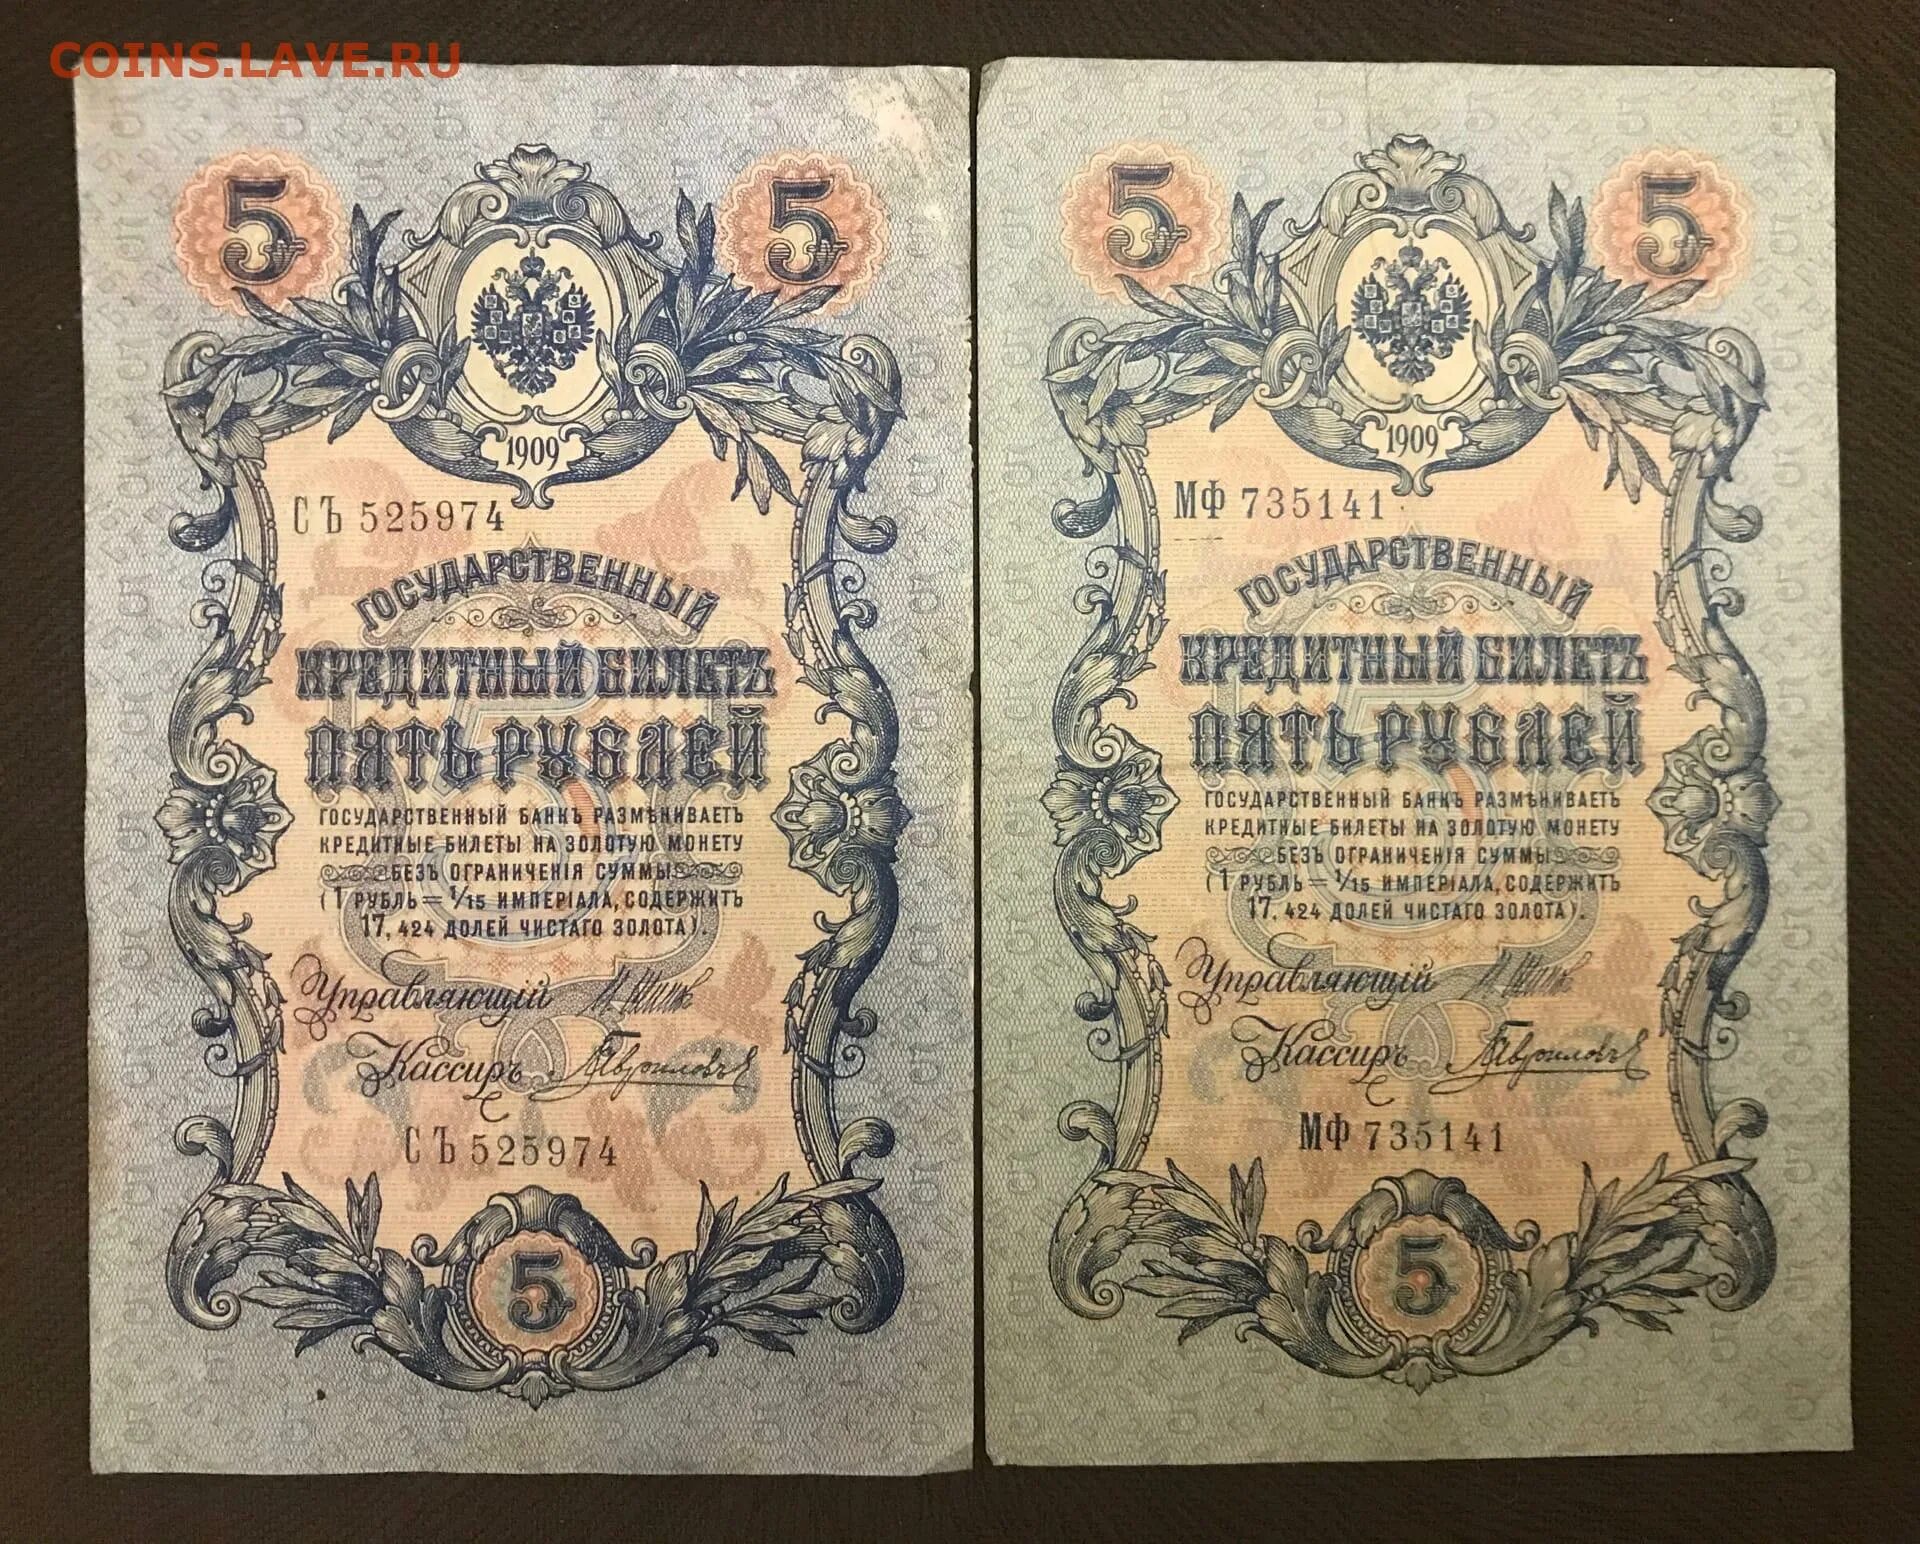 Пять рублей 1909. Государственный кредитный билет пять рублей 1909. 5 Рублей 1909 года бумажные.